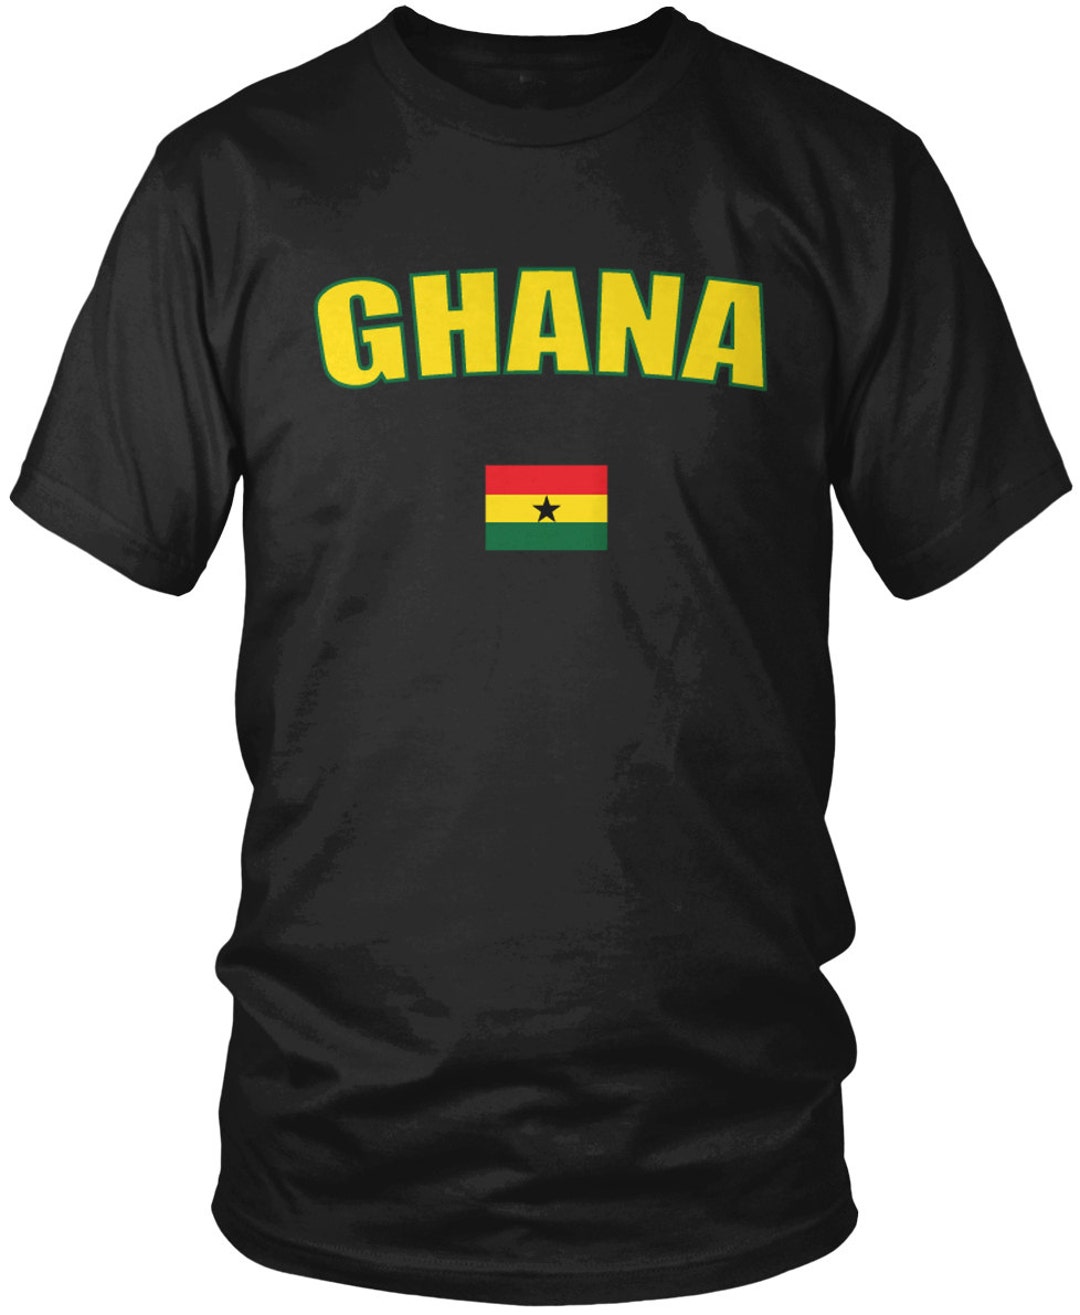 Ghana Men's T-shirt, Republic of Ghana, Ghanaian Pride, Men's Ghana ...